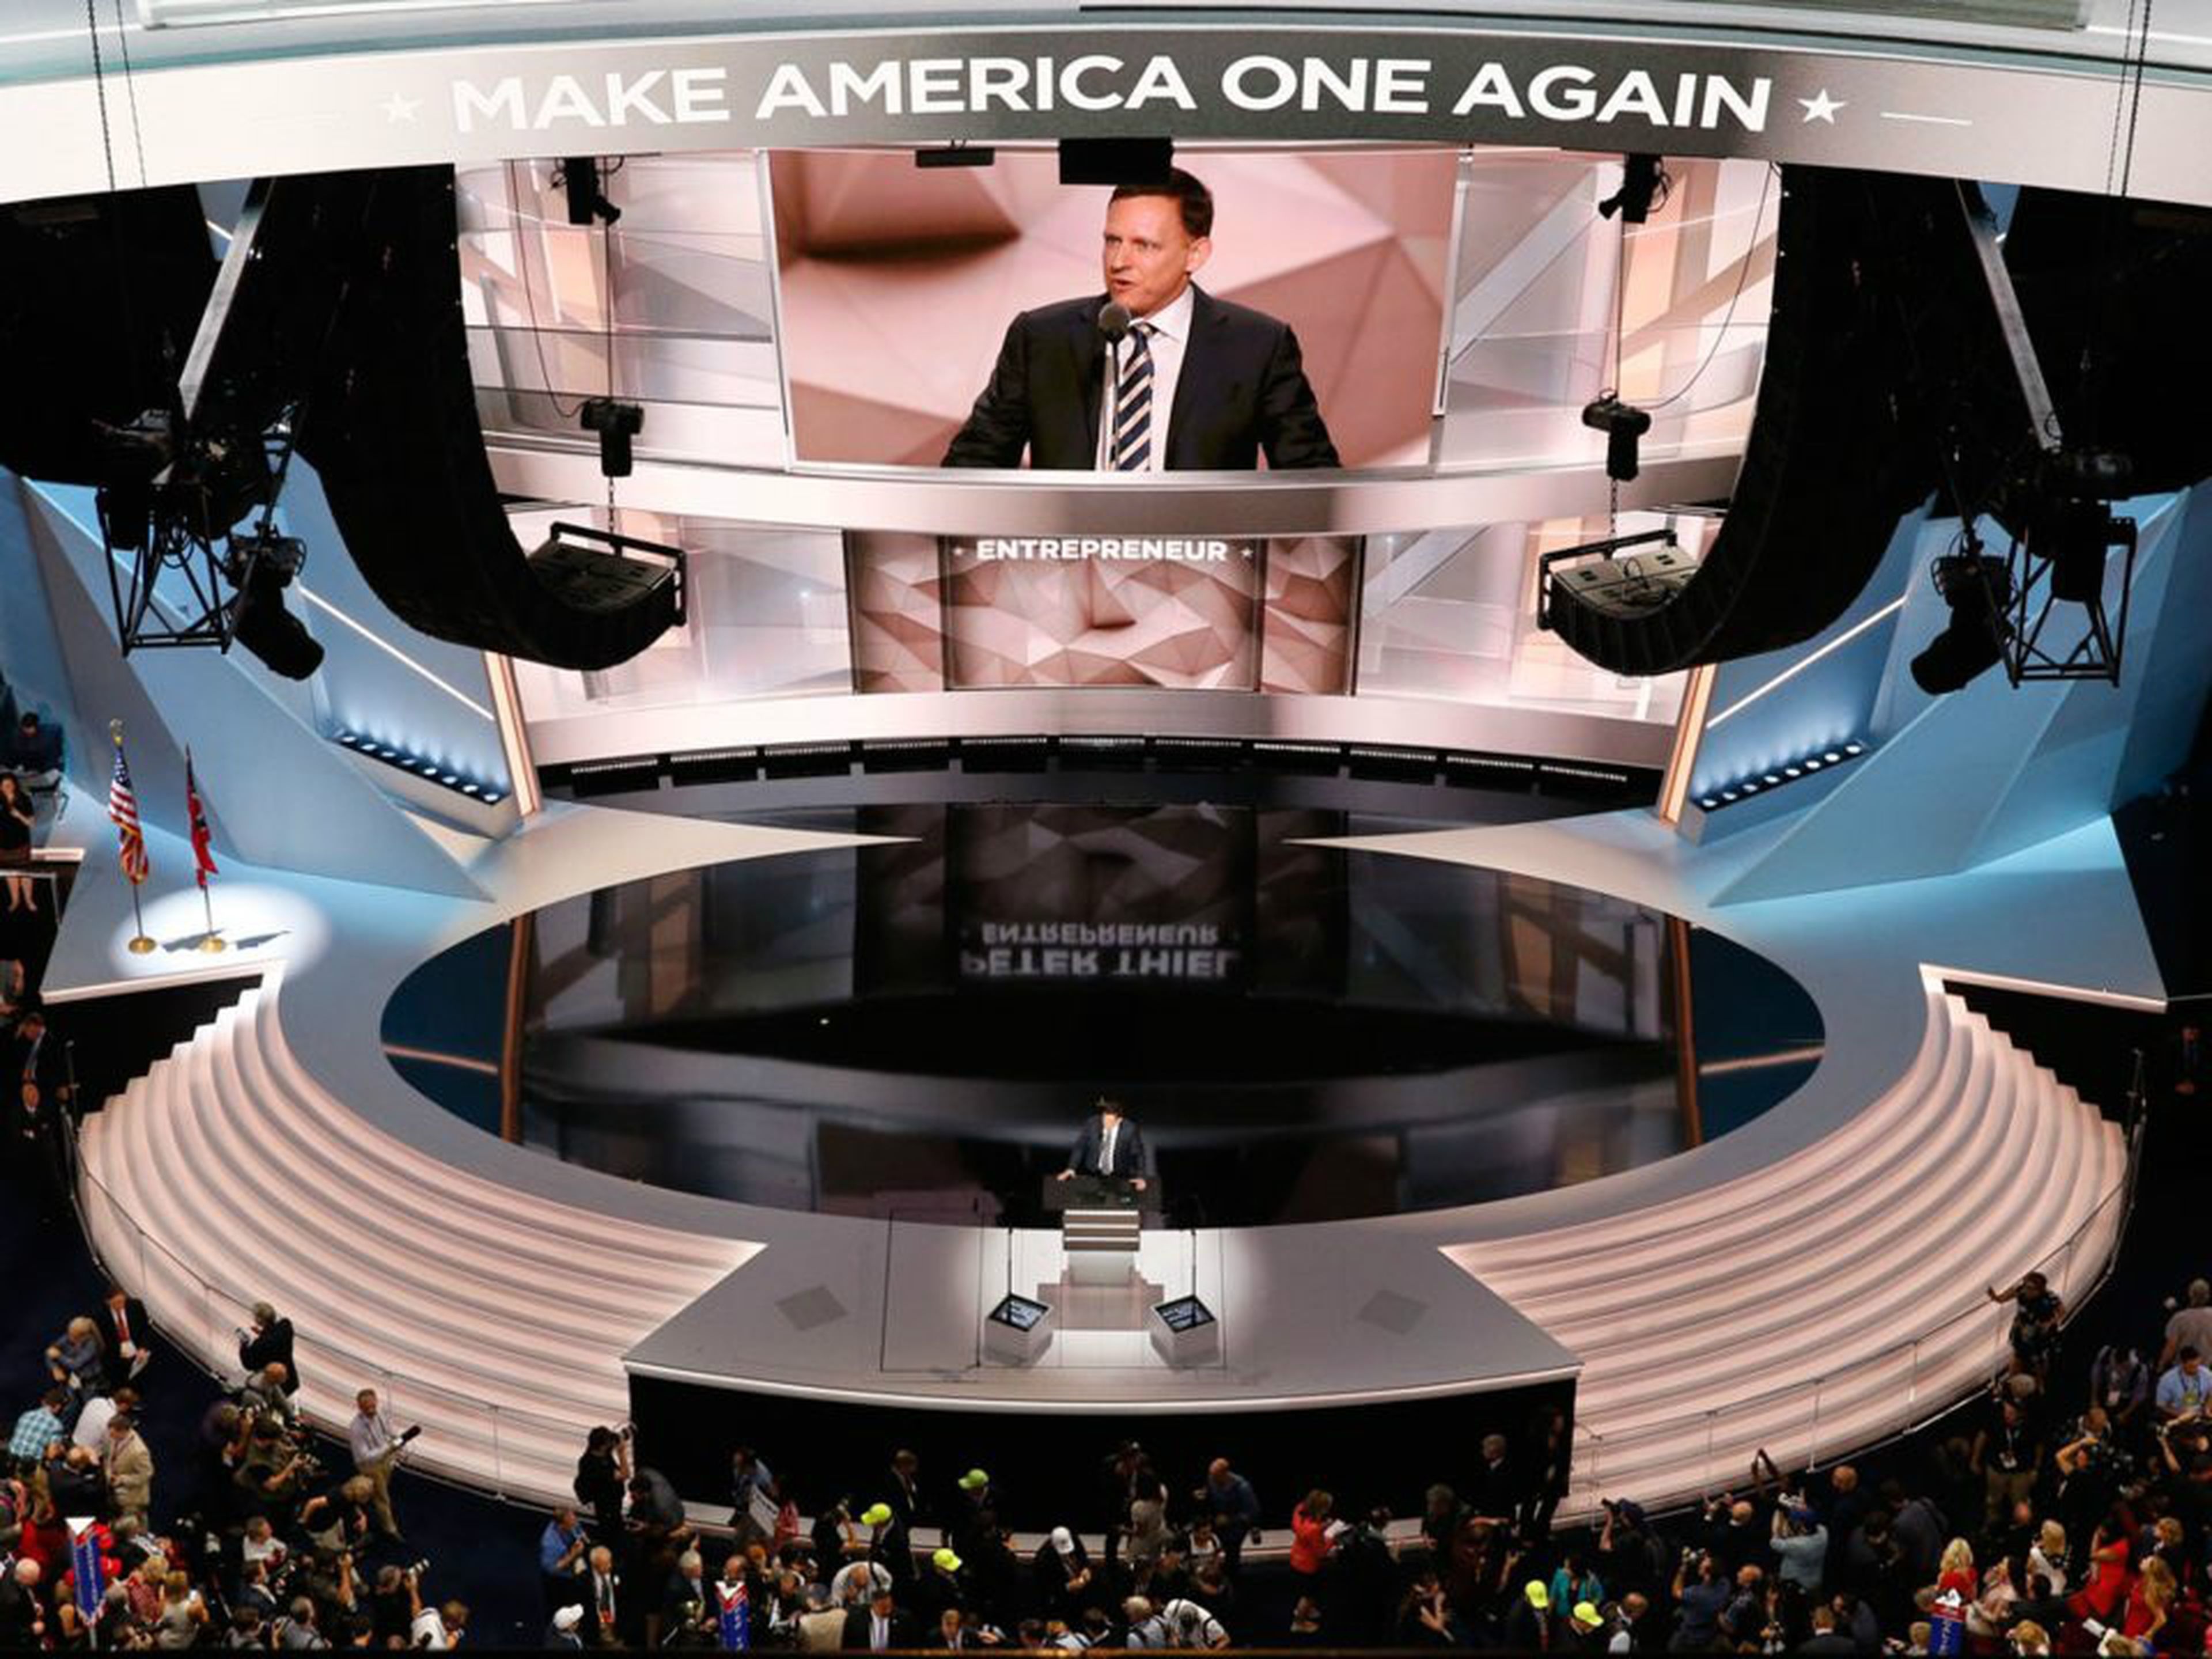 Thiel se hizo con el escenario durante la Convención nacional del Partido Republicano de Estados Unidos.